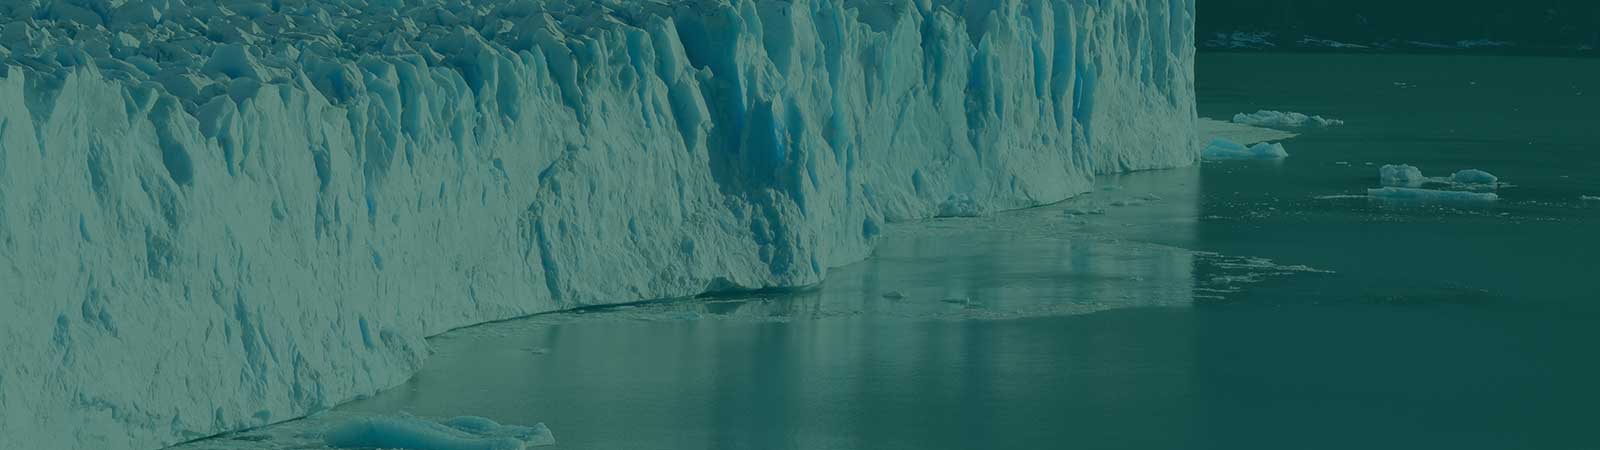 Background image of Iceberg